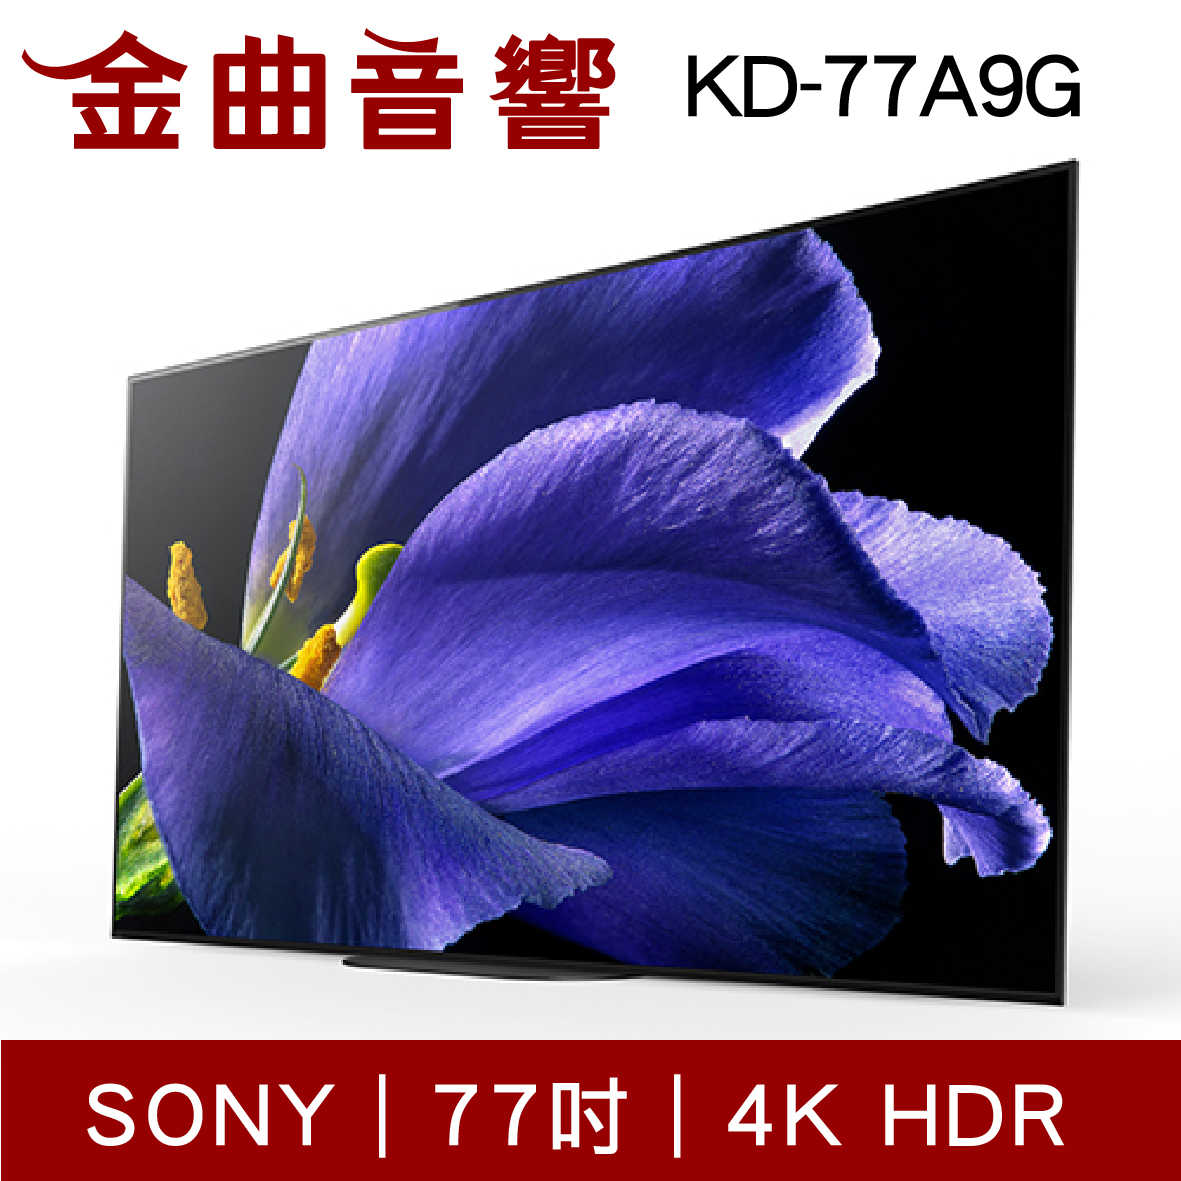 SONY 77吋 KD-77A9G 4K HDR OLED 電視 77A9G 電視 2019 | 金